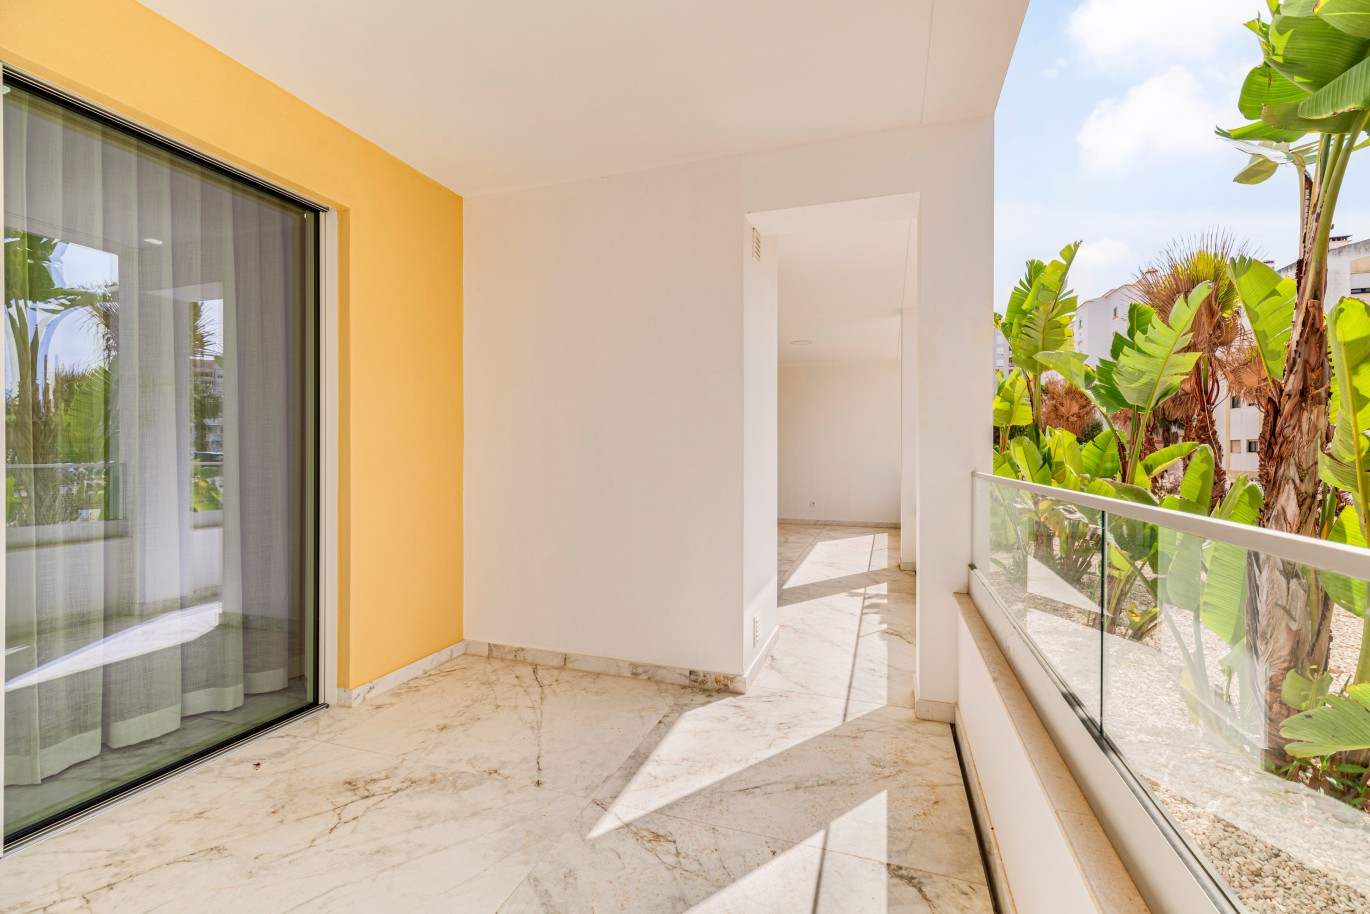 Apartamento em construção, com terraço, para venda, em Lagos, Algarve_238542